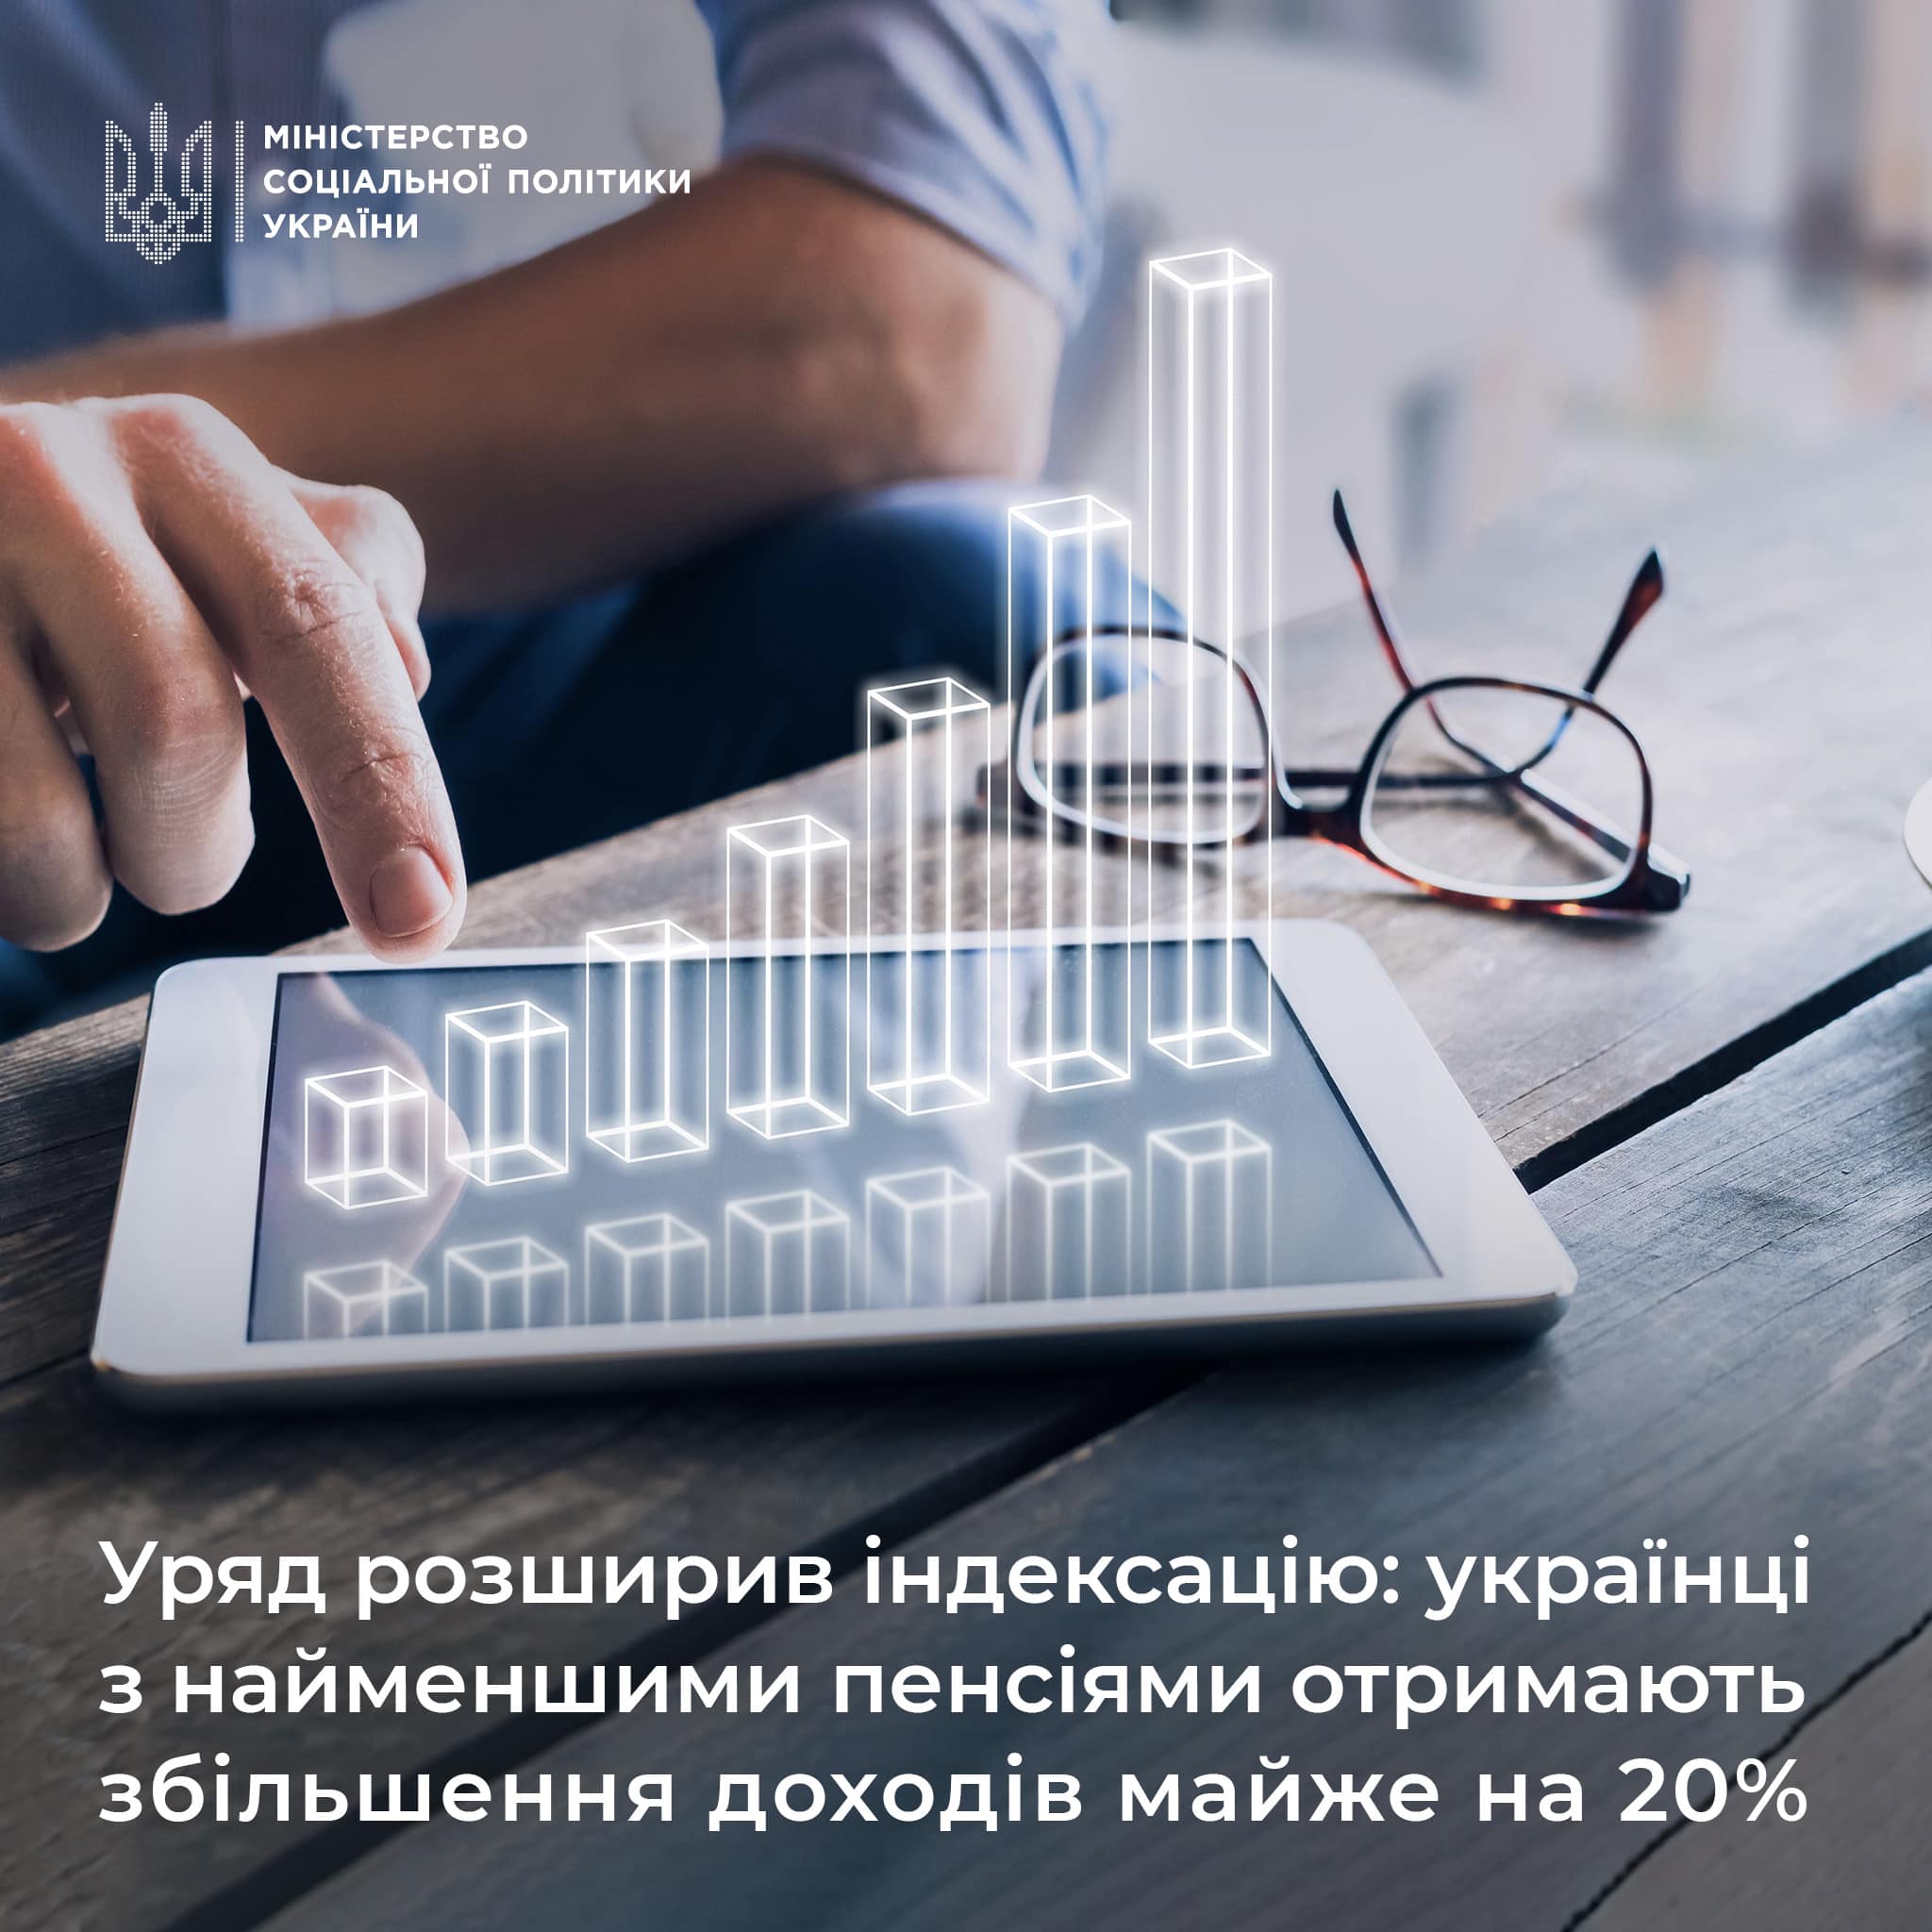 Уряд розширив індексацію: українці з найменшими пенсіями отримають збільшення доходів майже на 20%